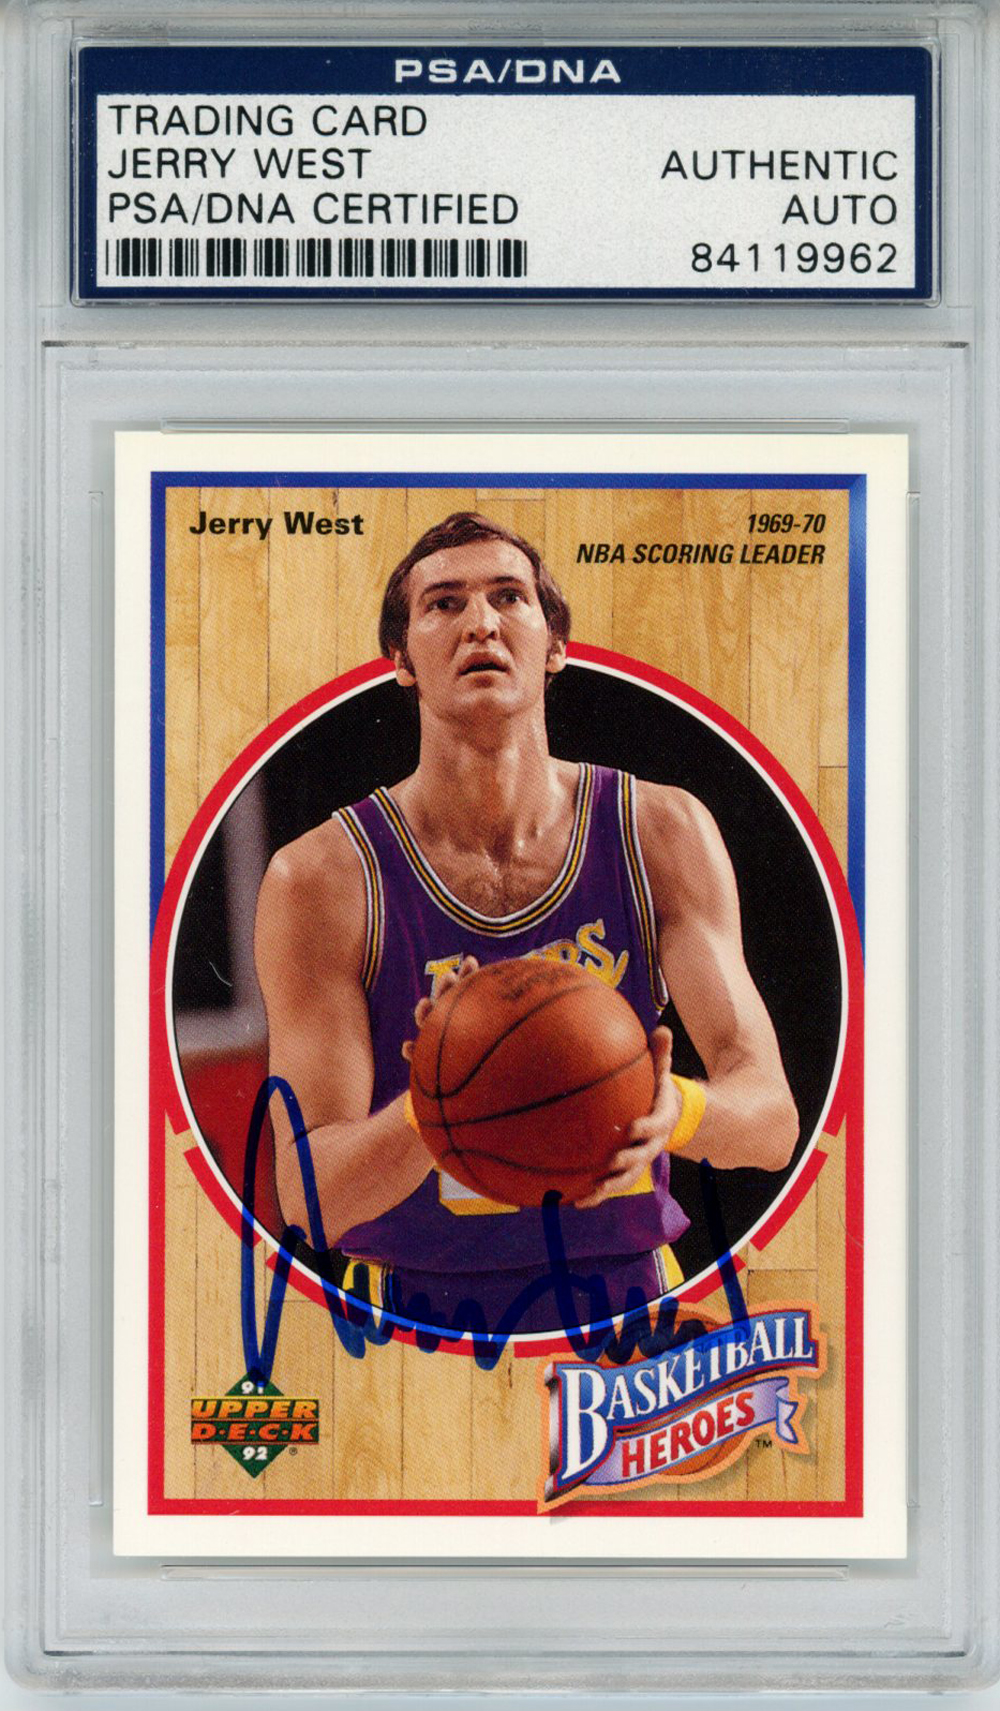 Jerry West Signed 1992 Upper Deck Basketball Heroes Card 4/9 PSA Slab 32896